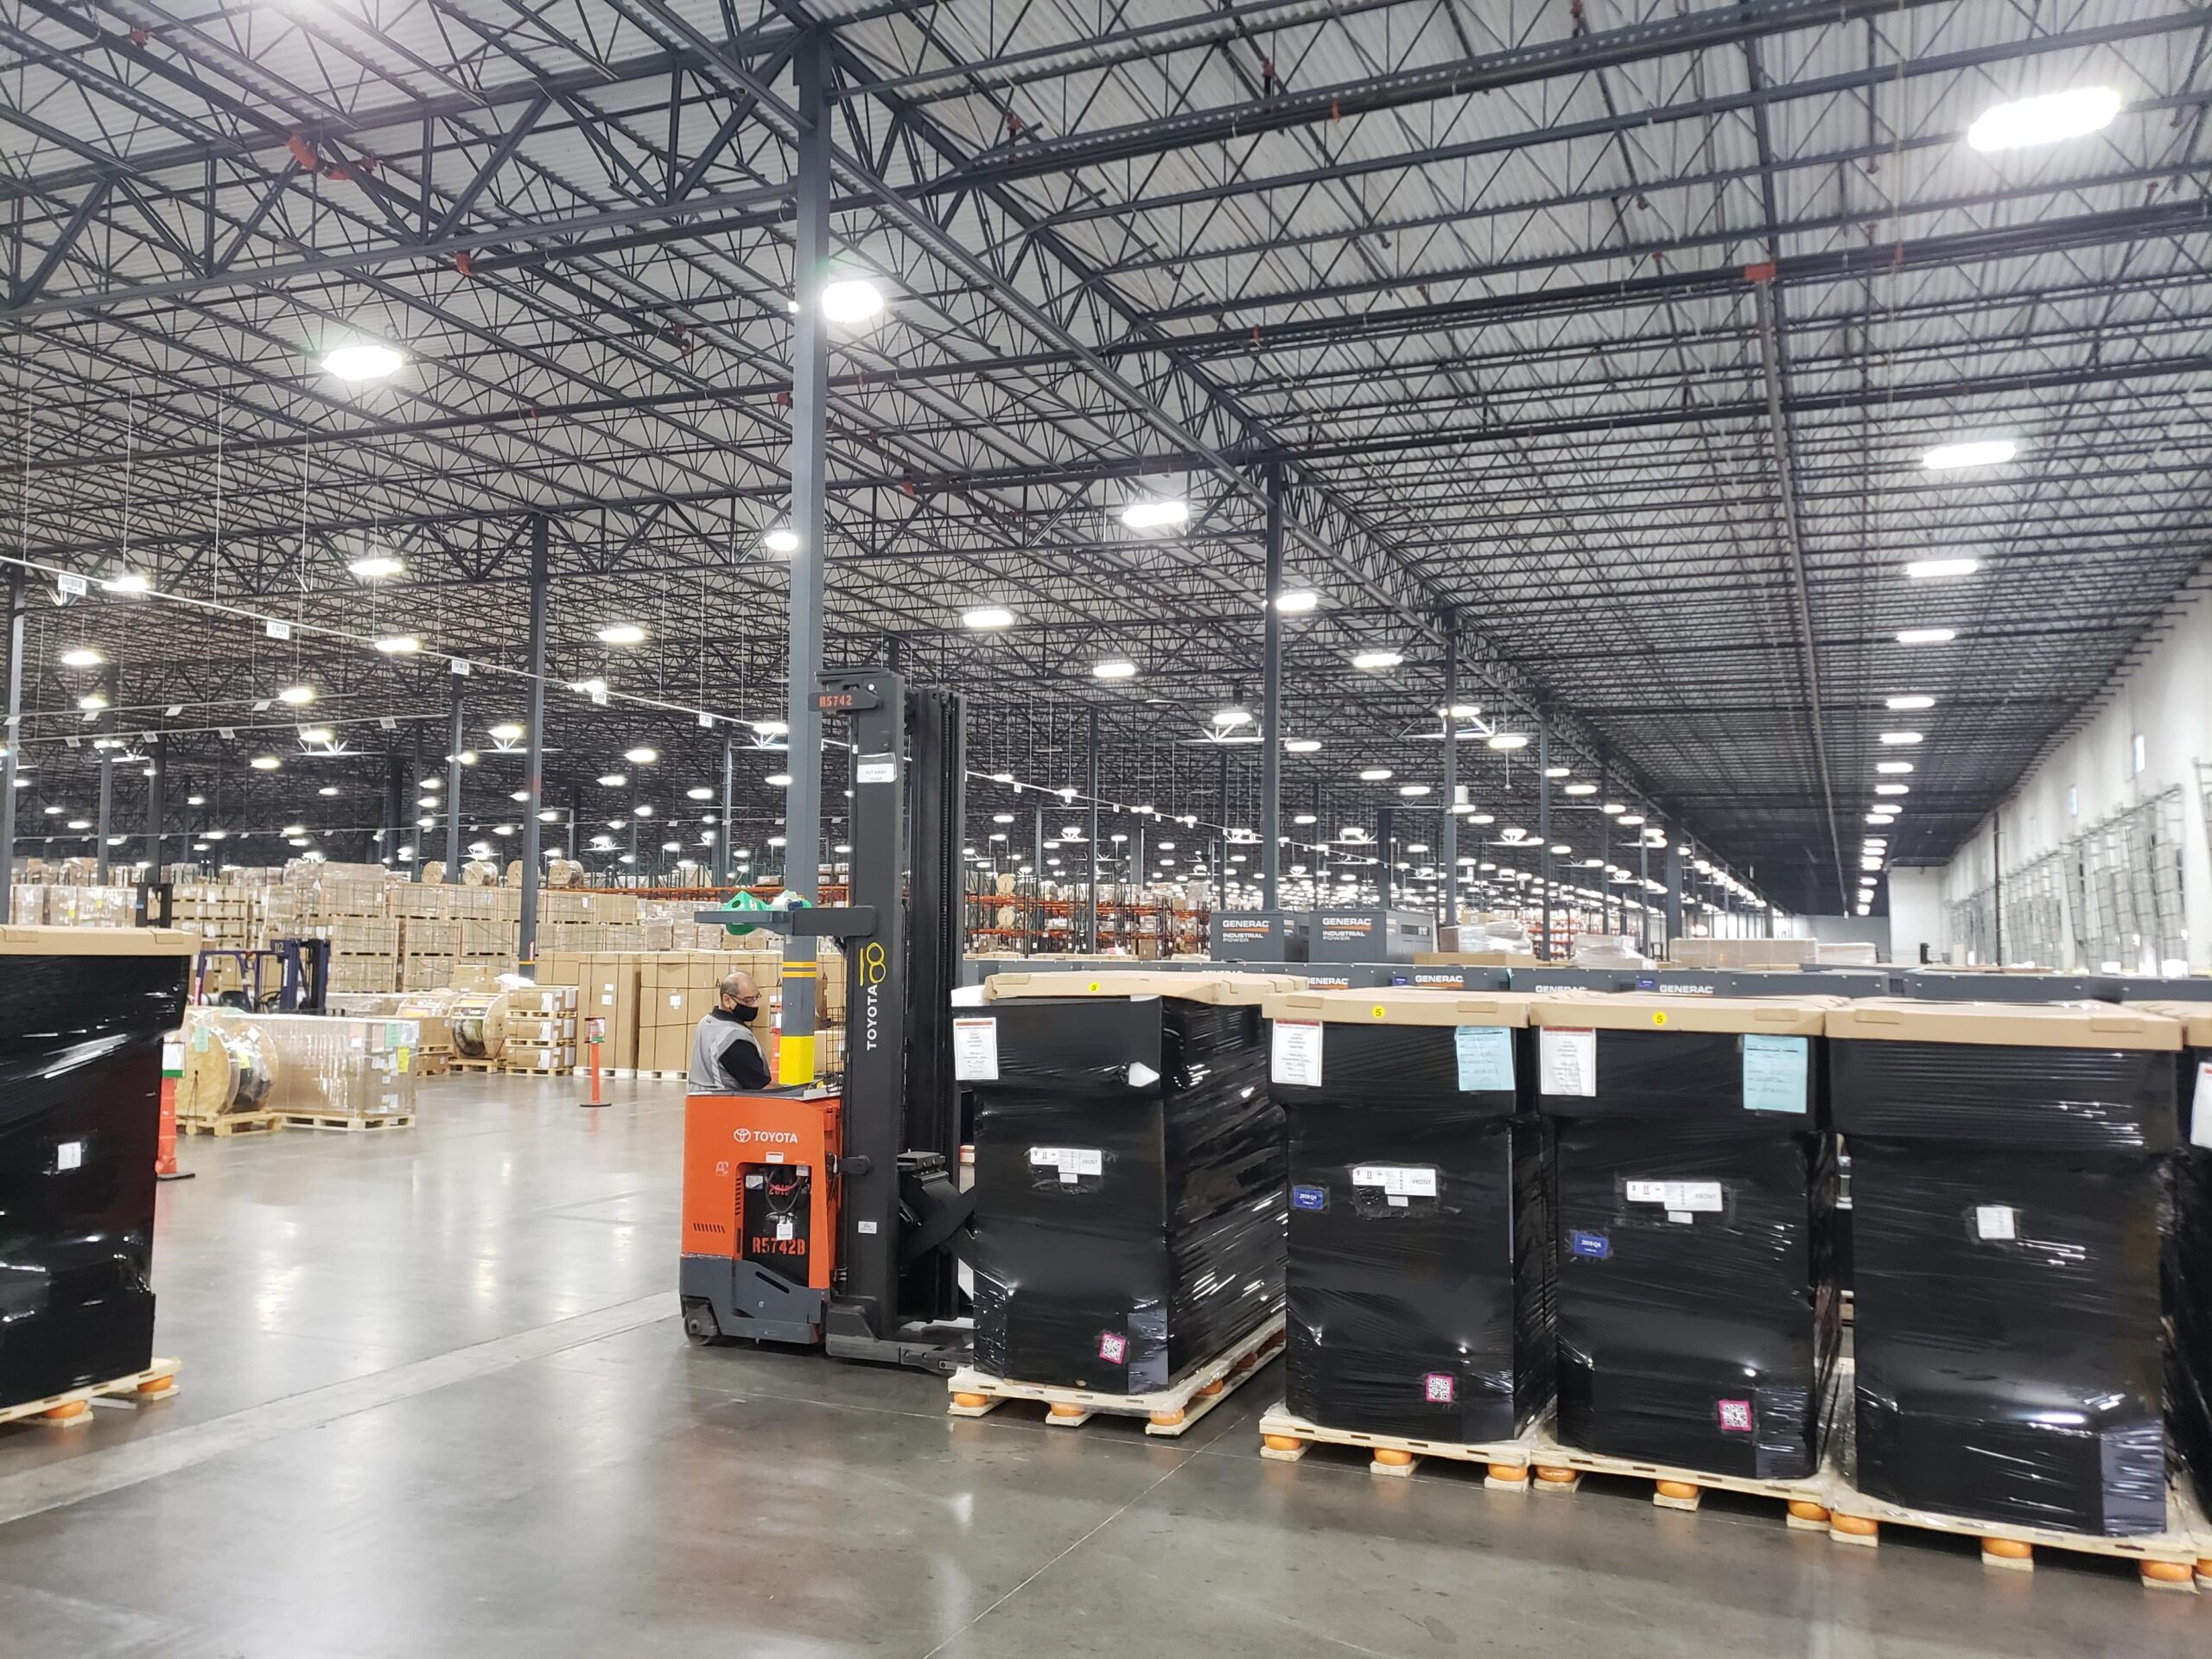 Thermal Camera Warehouse Installation; Arlington, TX 8/20